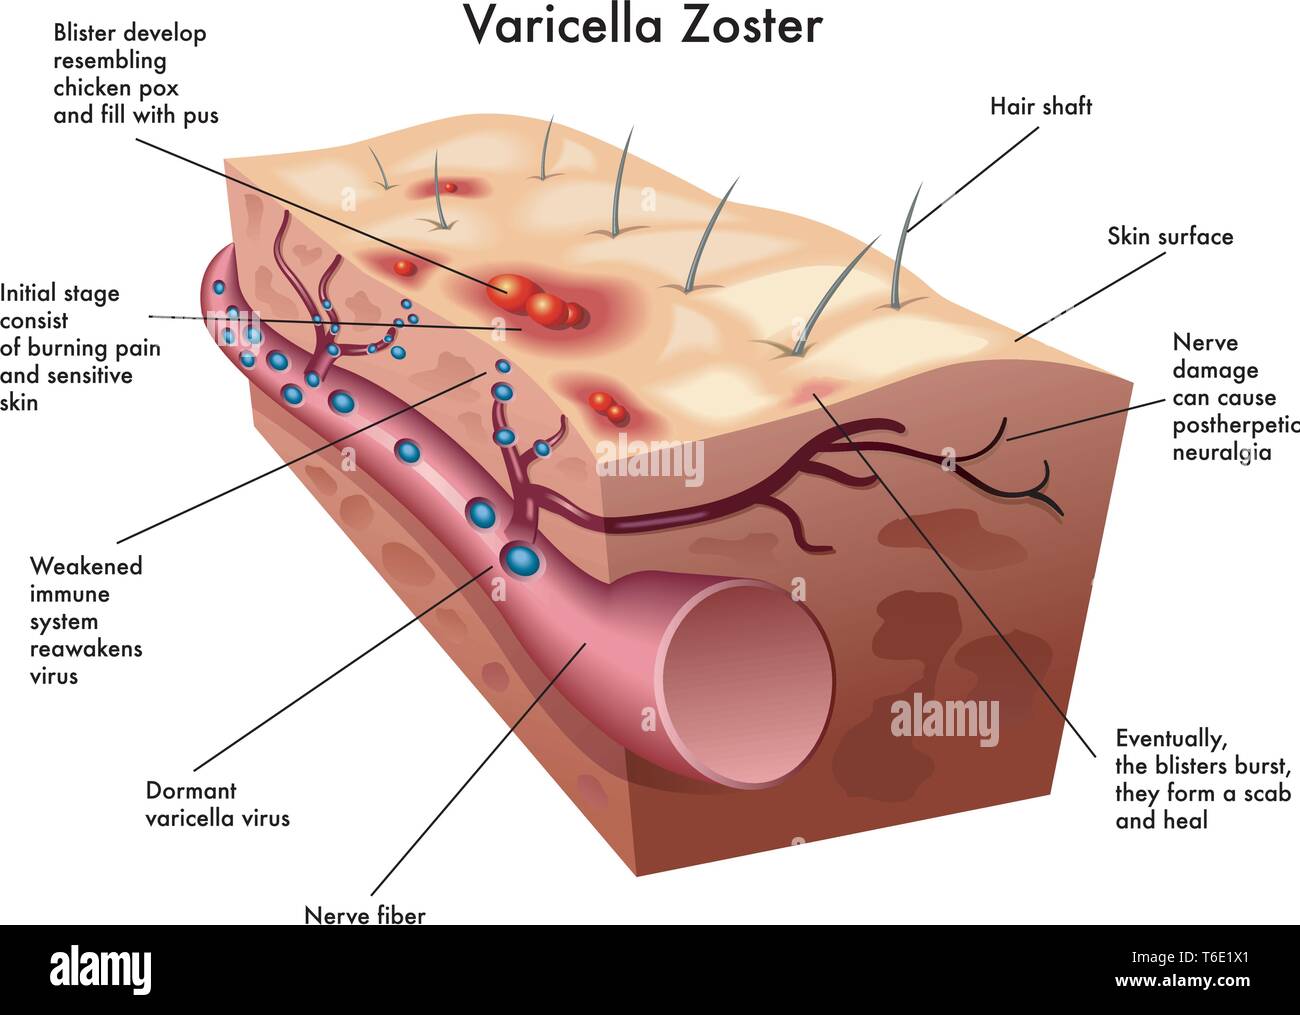 Illustrazione medica del virus di varicella zoster Illustrazione Vettoriale